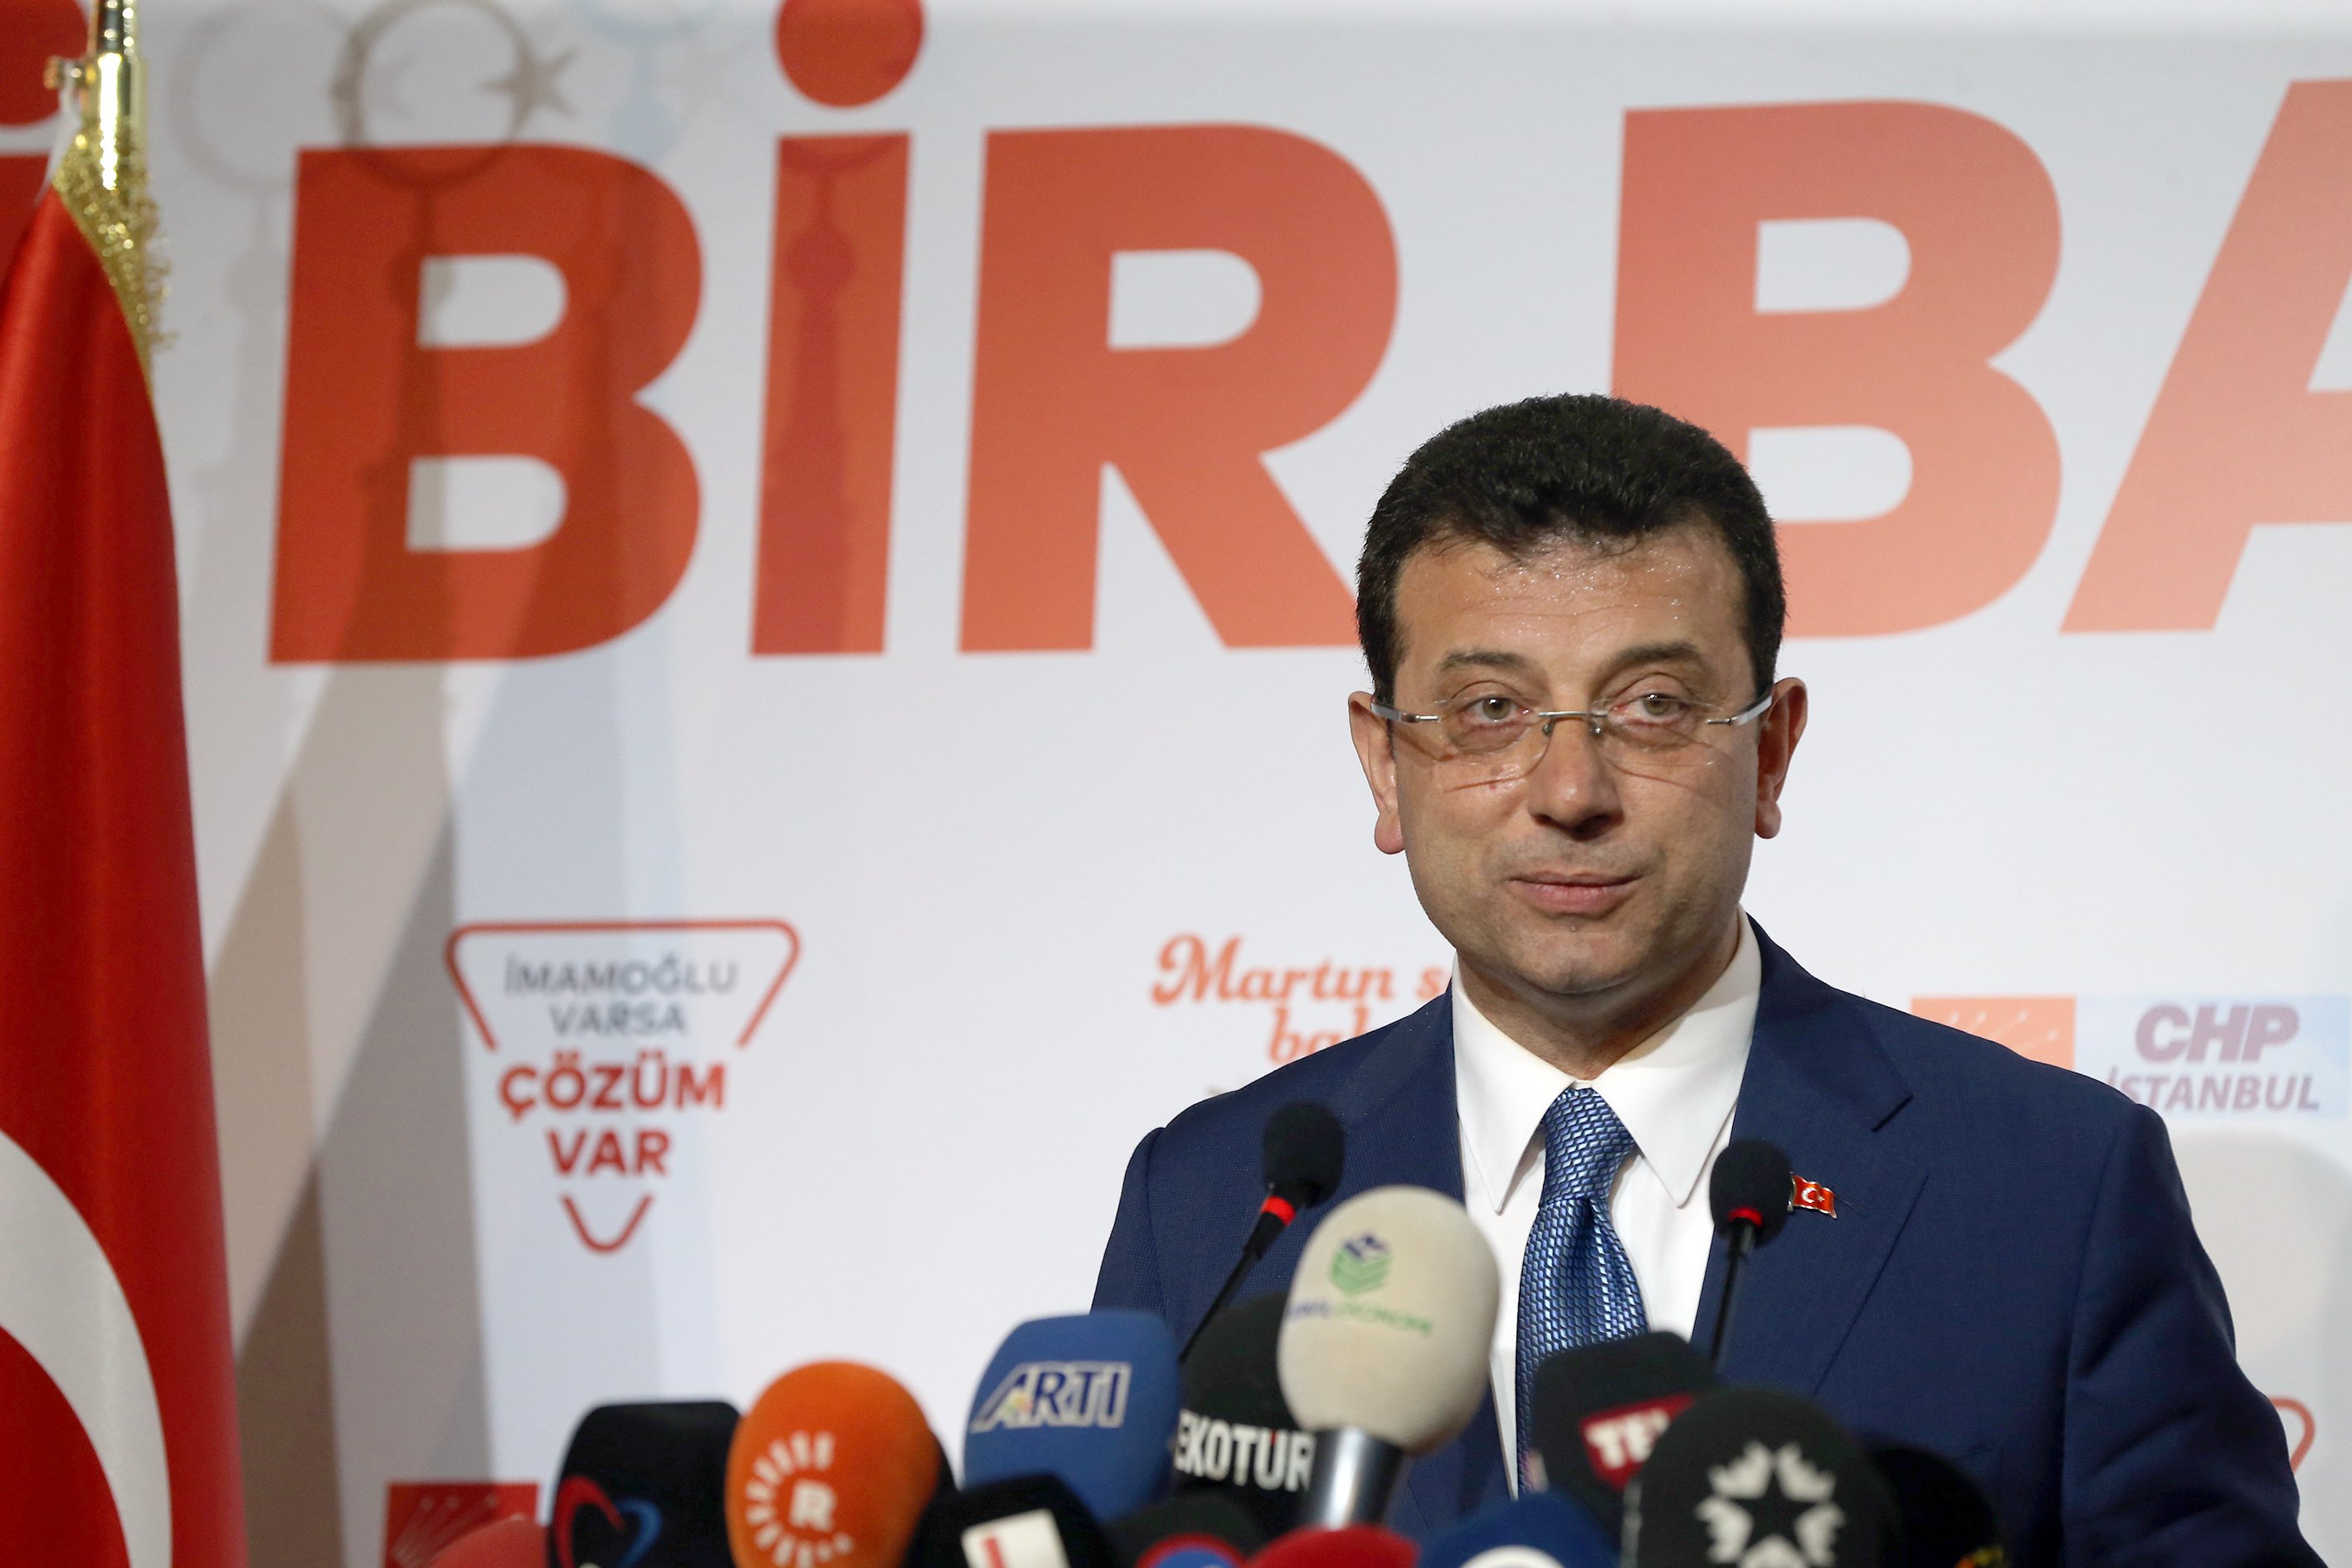 مرشح الحزب المعارض يطالب بتسليمه مضبطة رئاسة البلدية باسطنبول